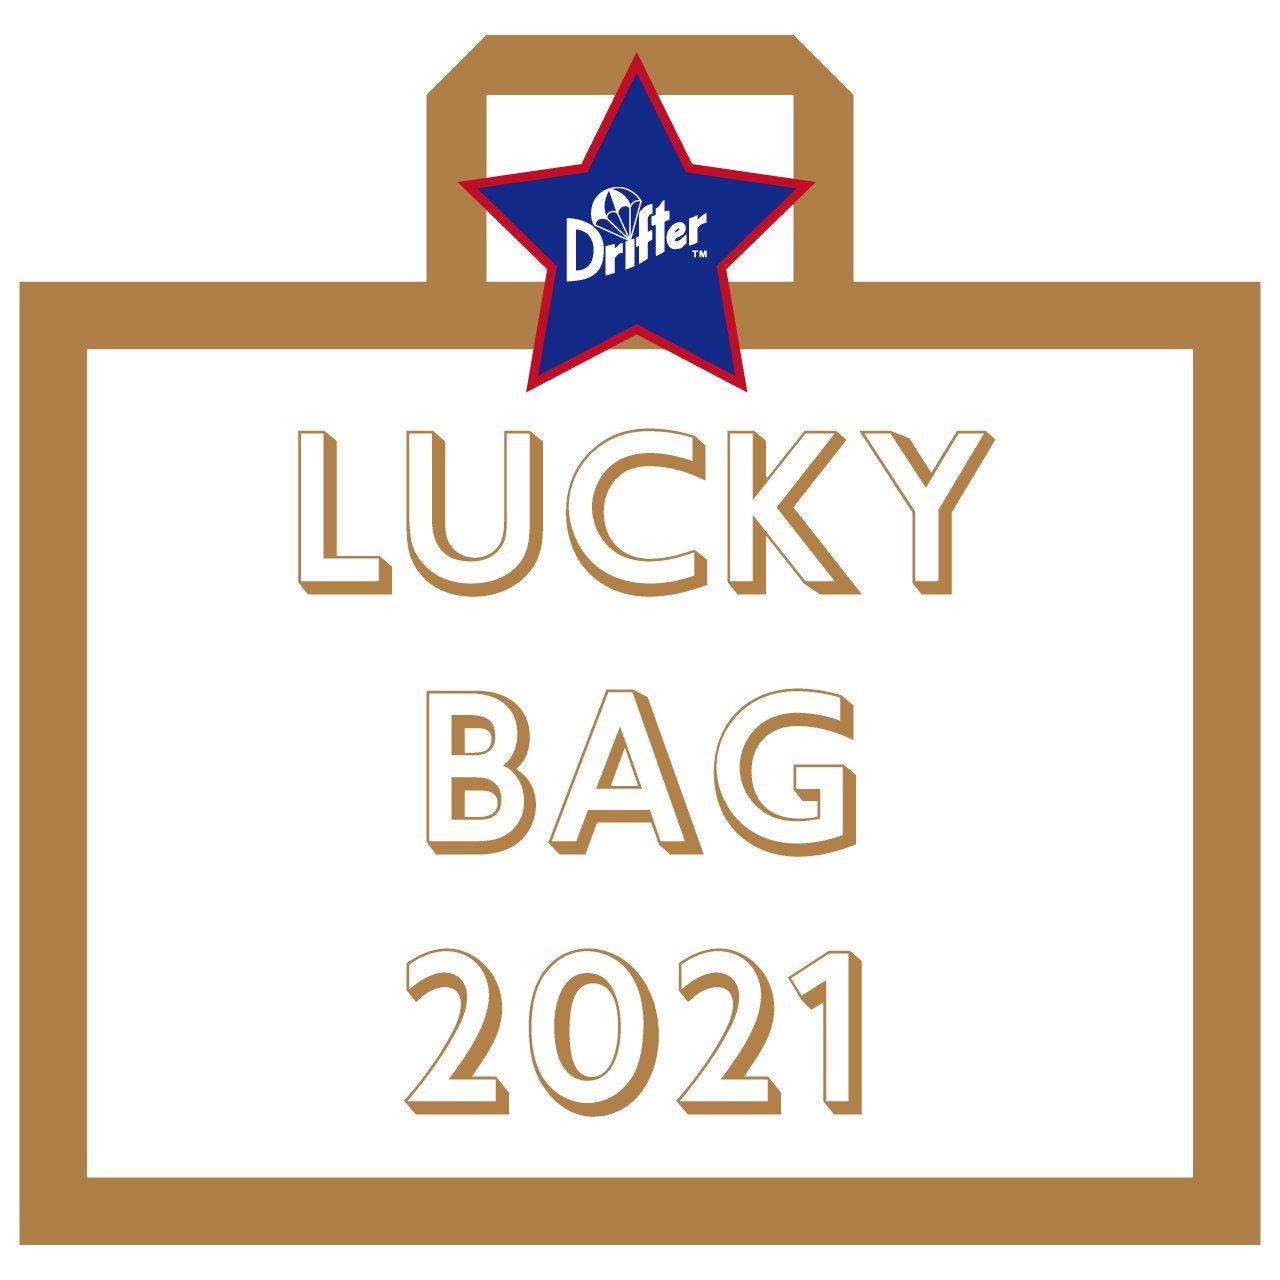 Drifter_lucky_bag_2021_福袋